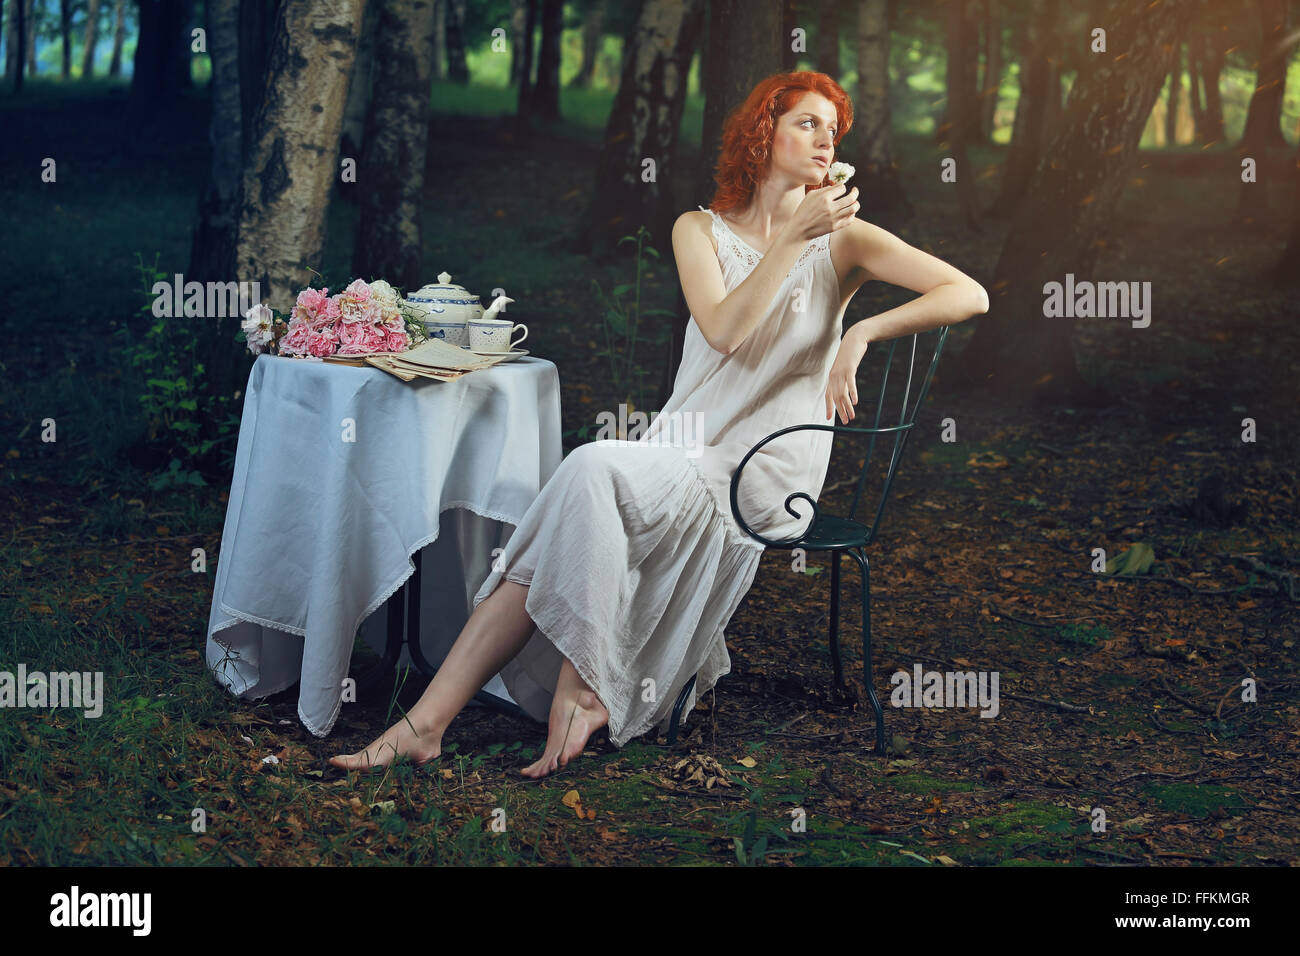 Schöne Frau mit roten Haaren in romantisches Licht surreal. Fantasie-Porträt Stockfoto